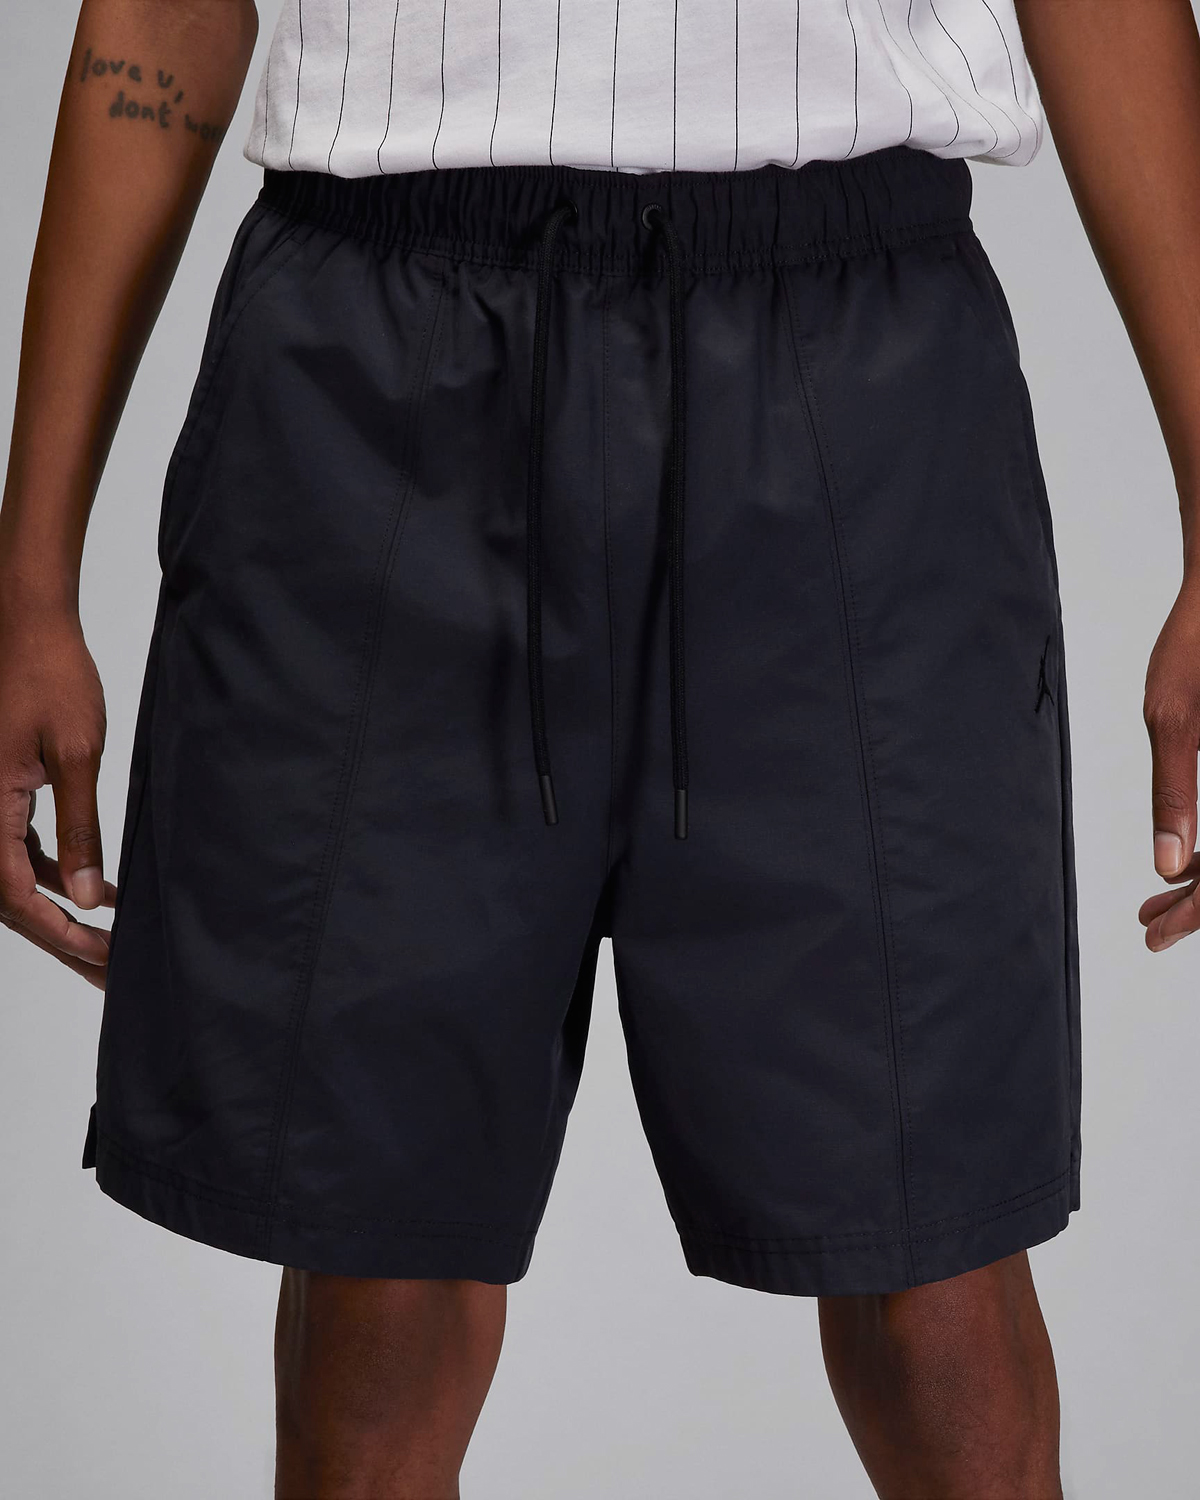 Jordan-Essentials-Woven-Shorts-Black-2